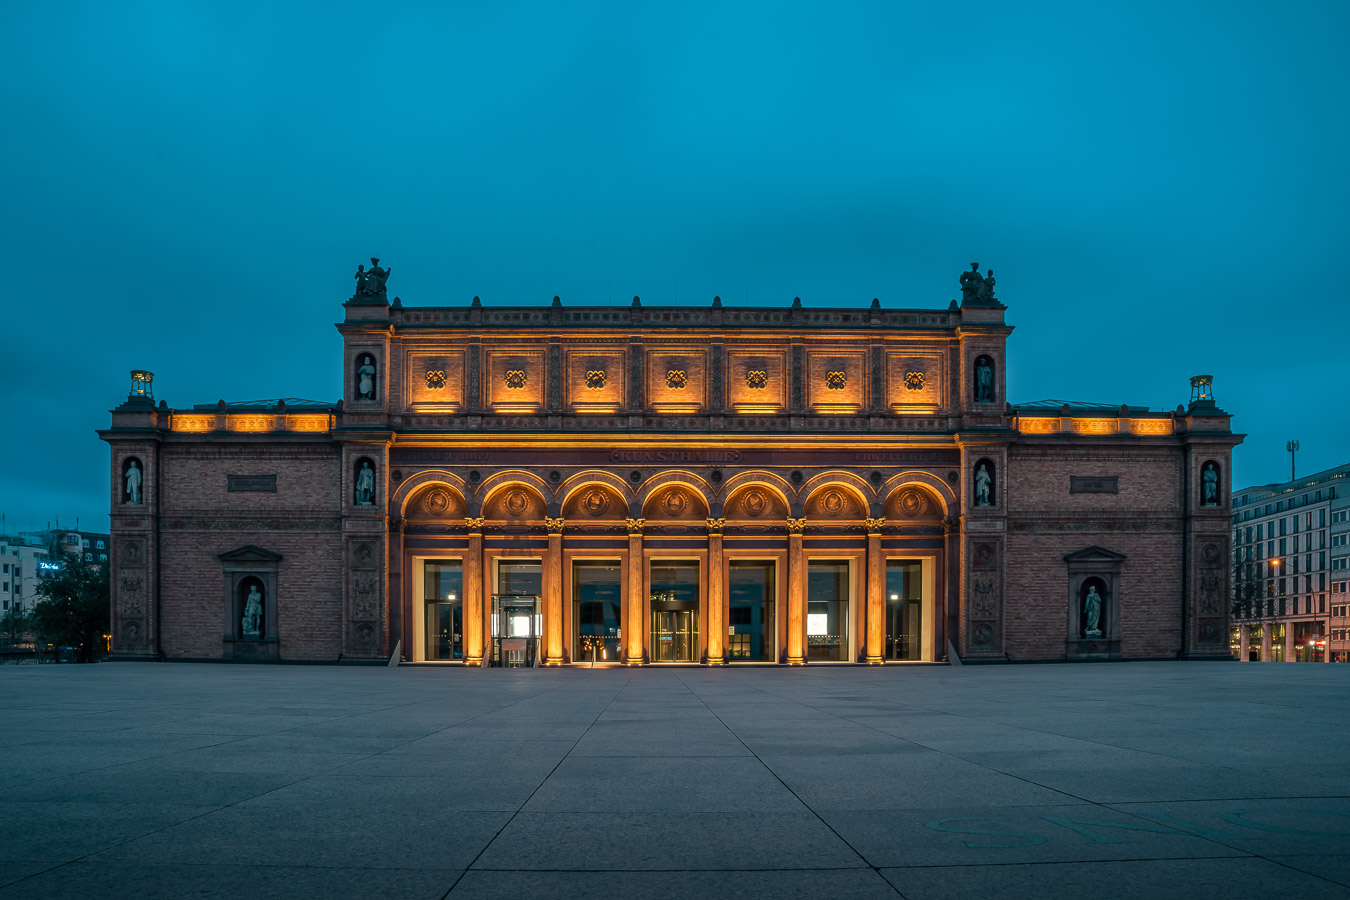 Kunsthalle Hamburg